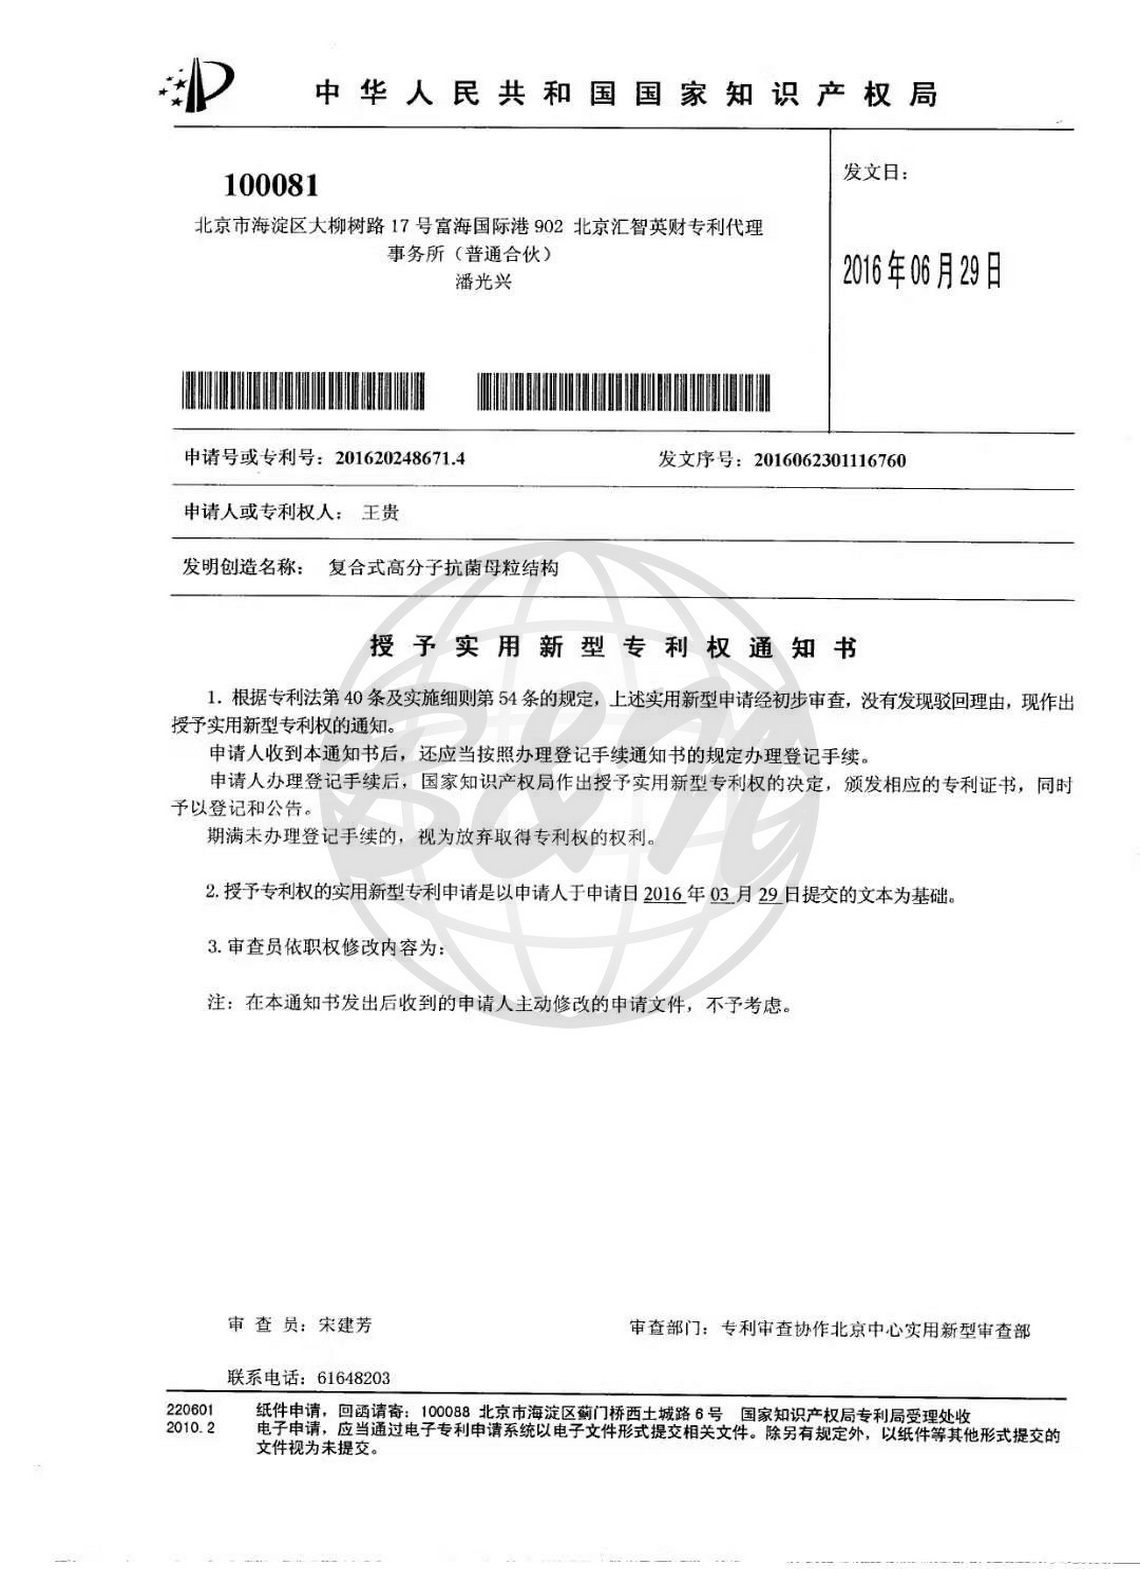 1-2,2016_06中国新型专利四合一银锌铜锗.jpg